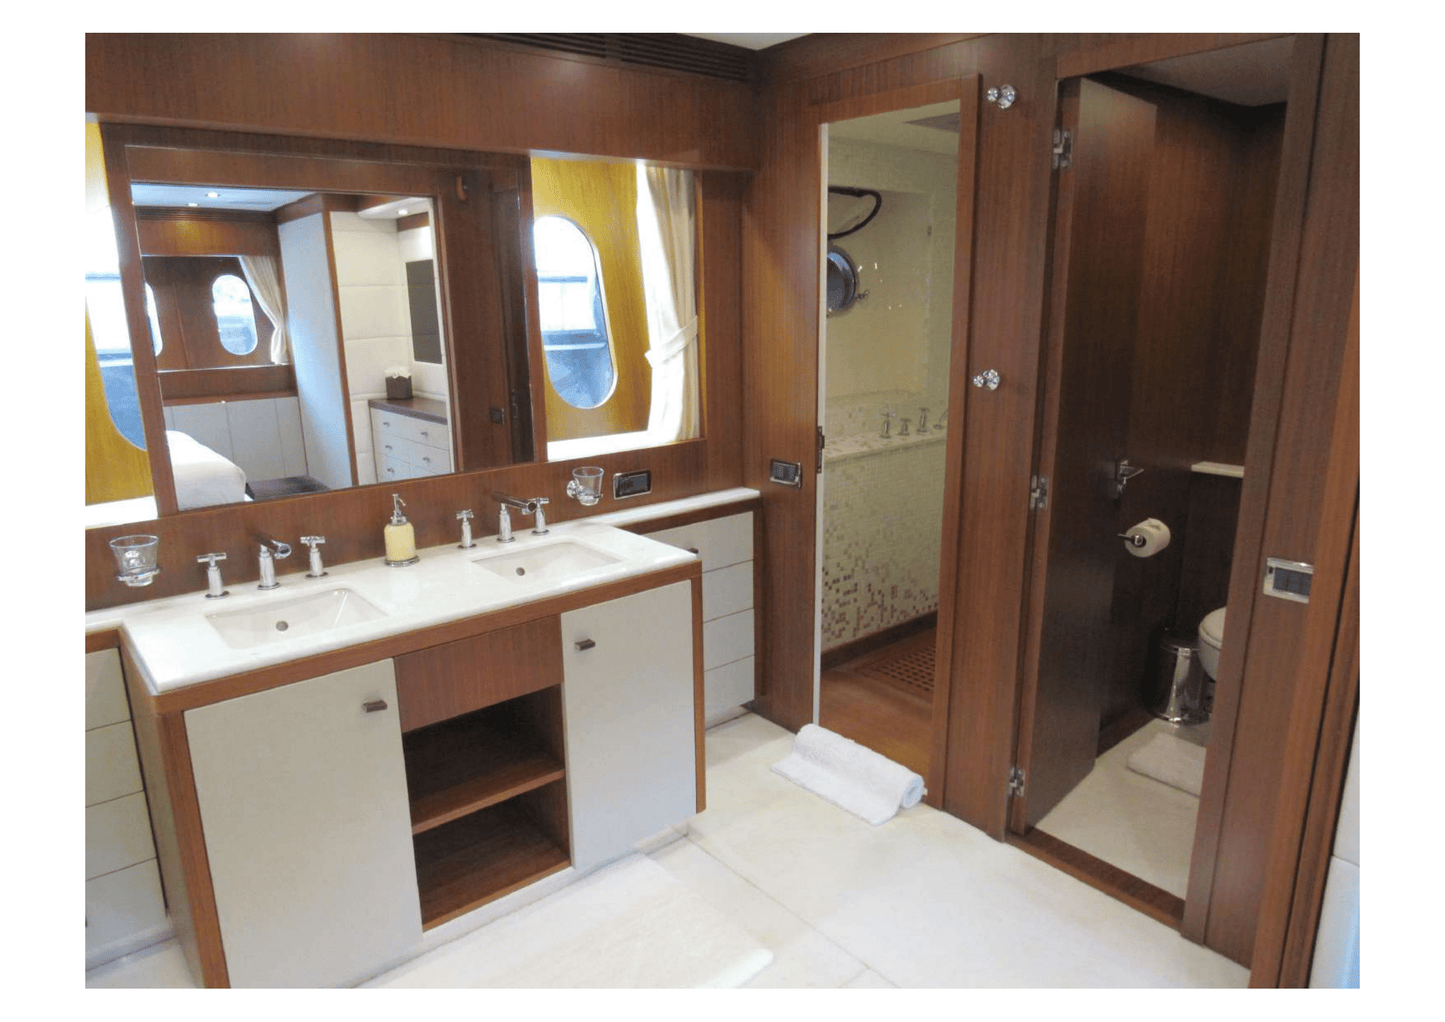 105' Leopard Flybridge - Yacht